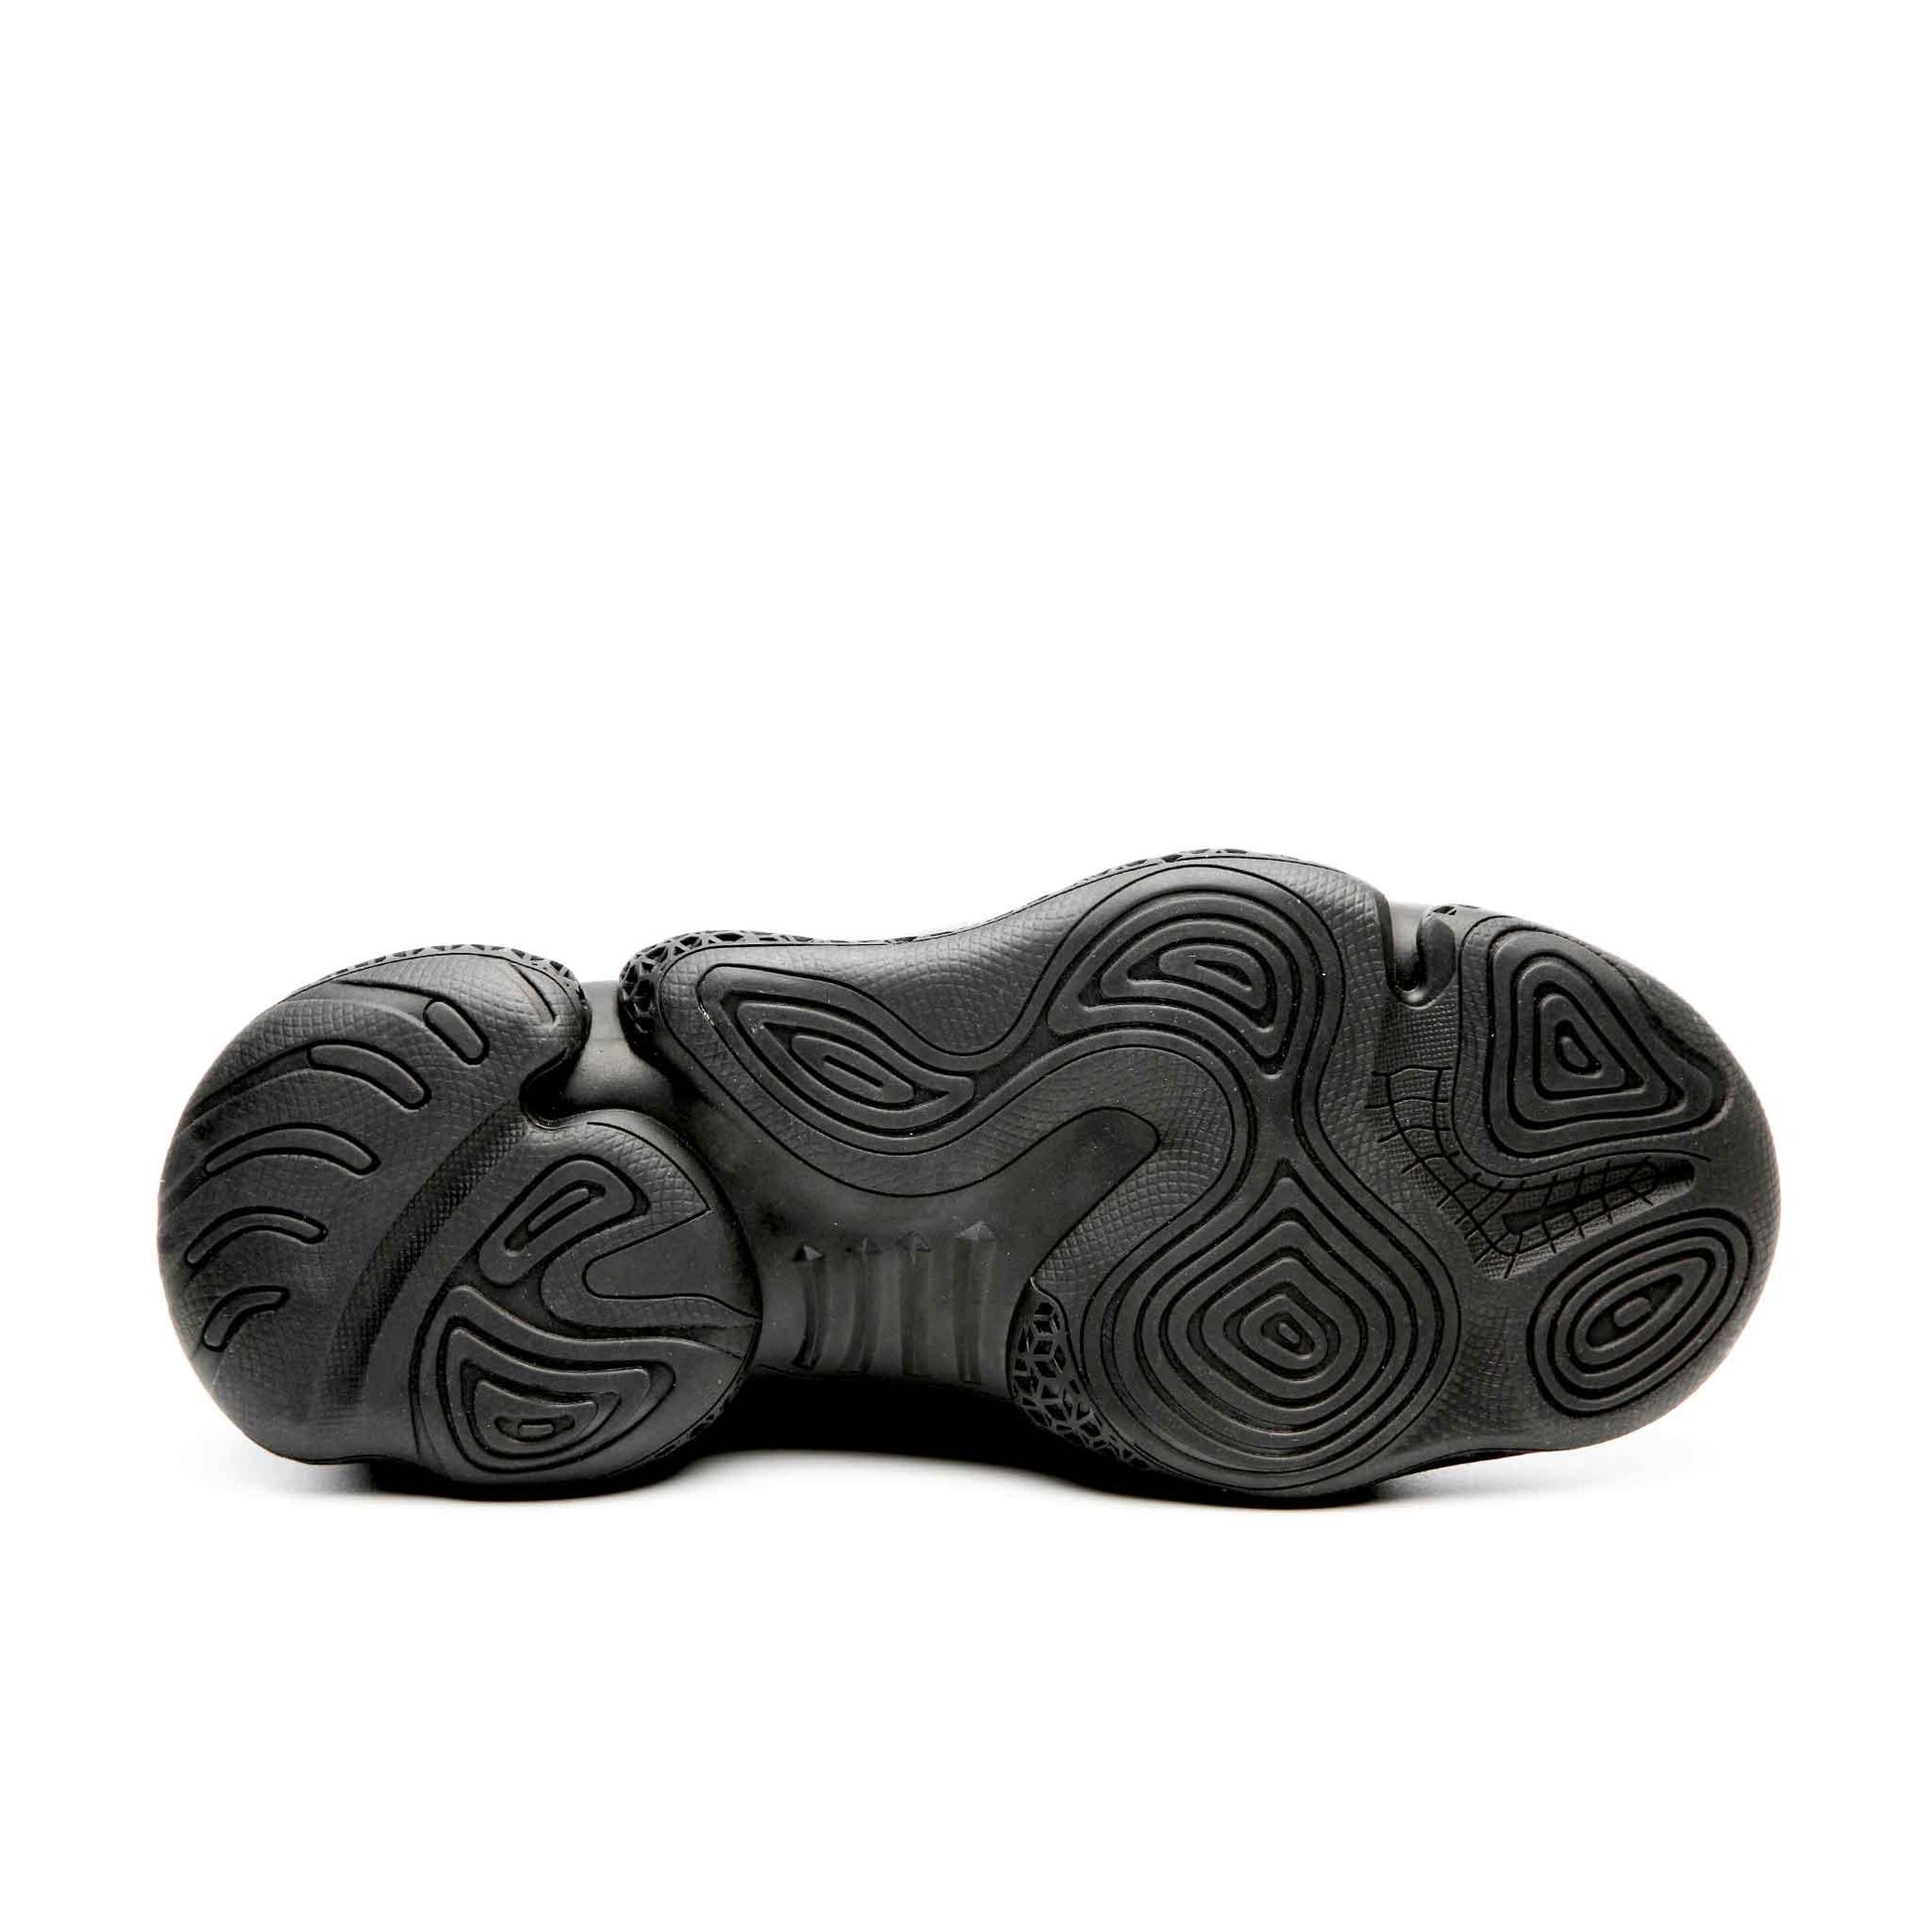 Men's Steel Toe Shoes - Waterproof | Z001 - USINE PRO Footwear